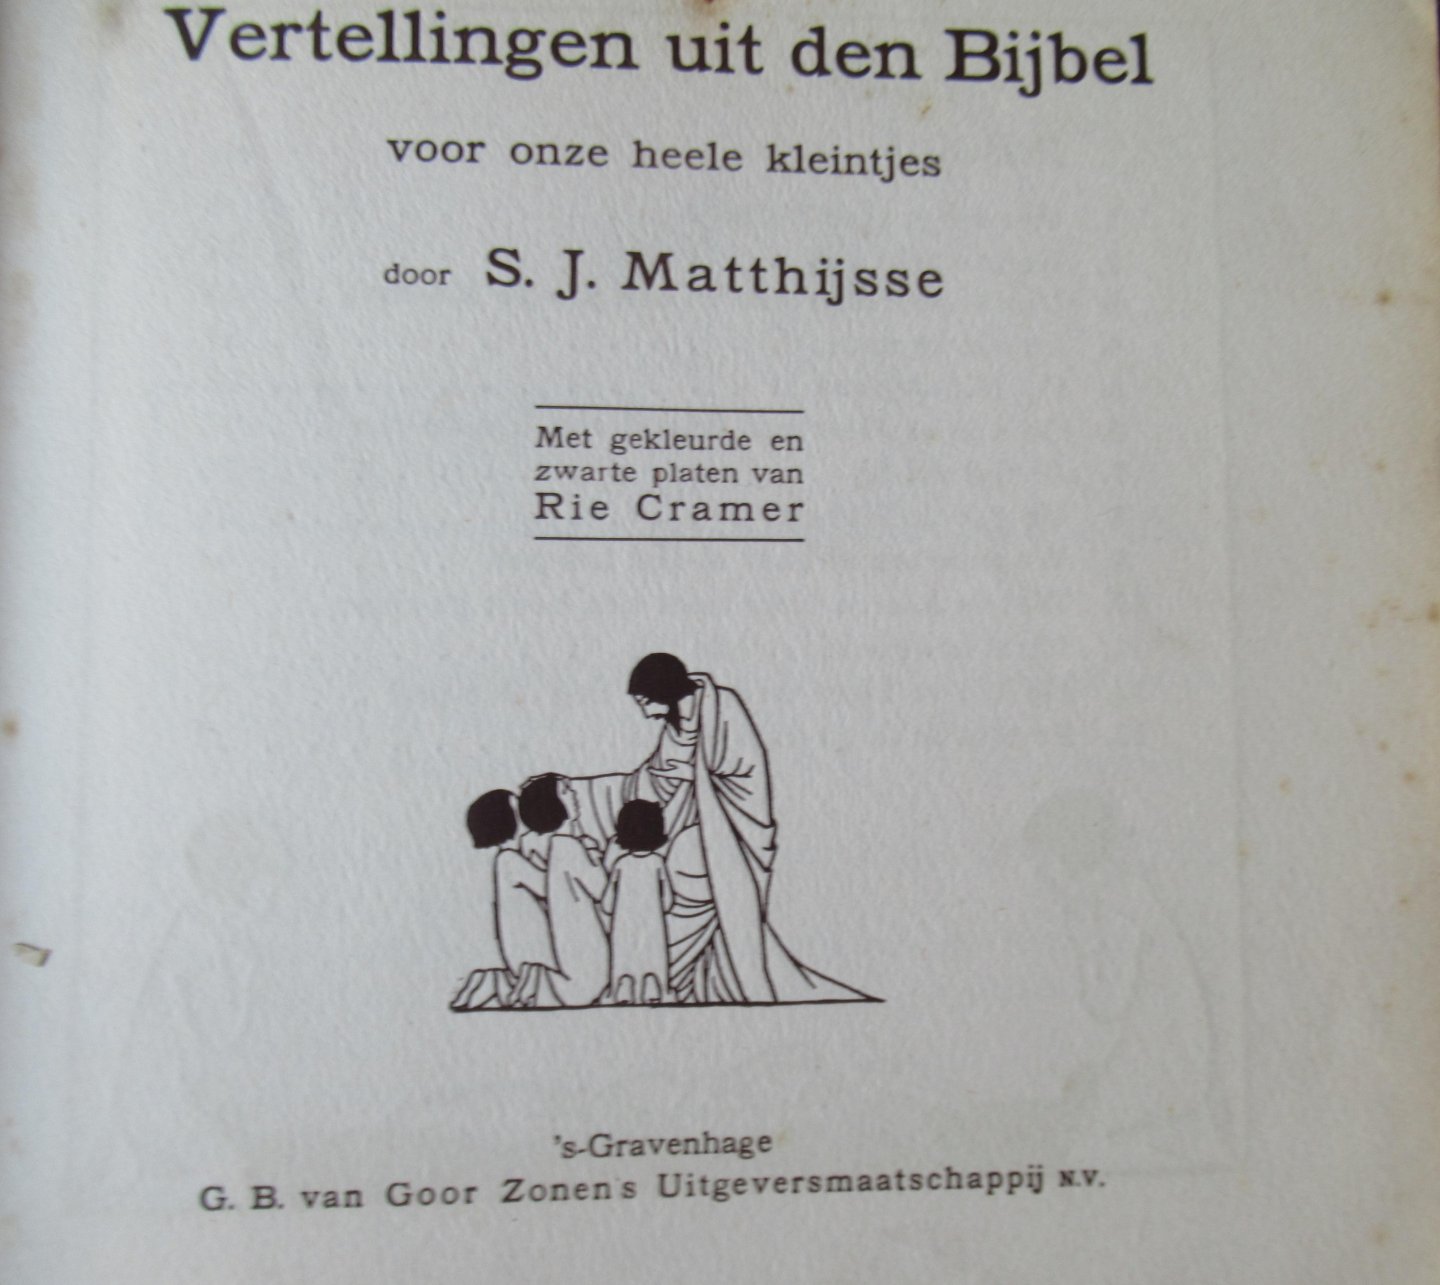 Matthijsse, S.J. - Vertellingen uit den bijbel. voor onze heele kleintjes